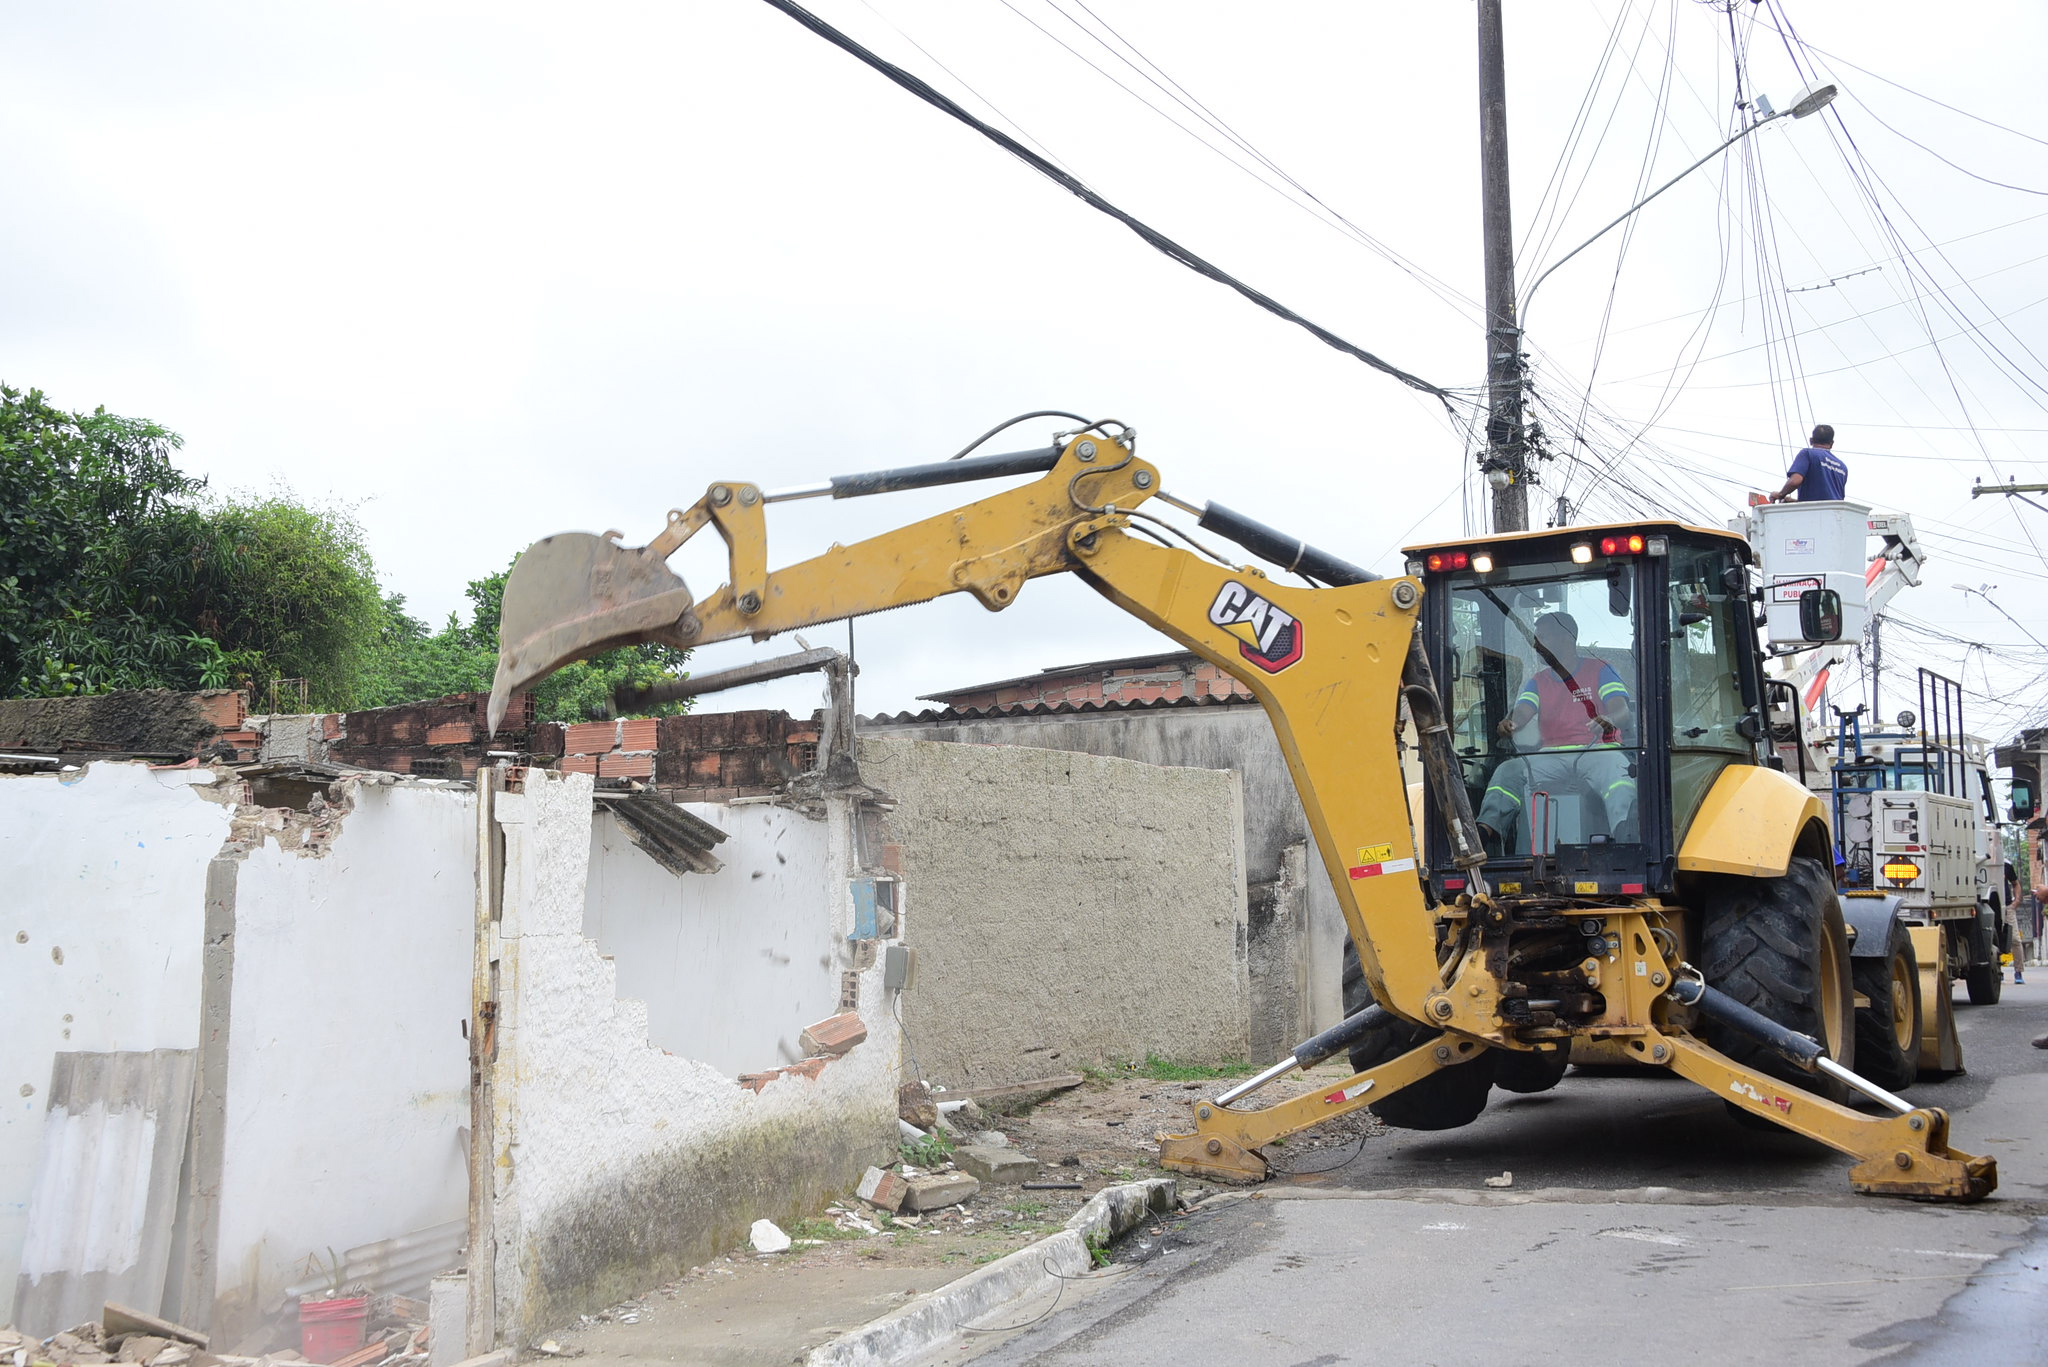 Gated demole casas construídas irregularmente no bairro Pedreiras. (Foto: Clarildo Menezes)